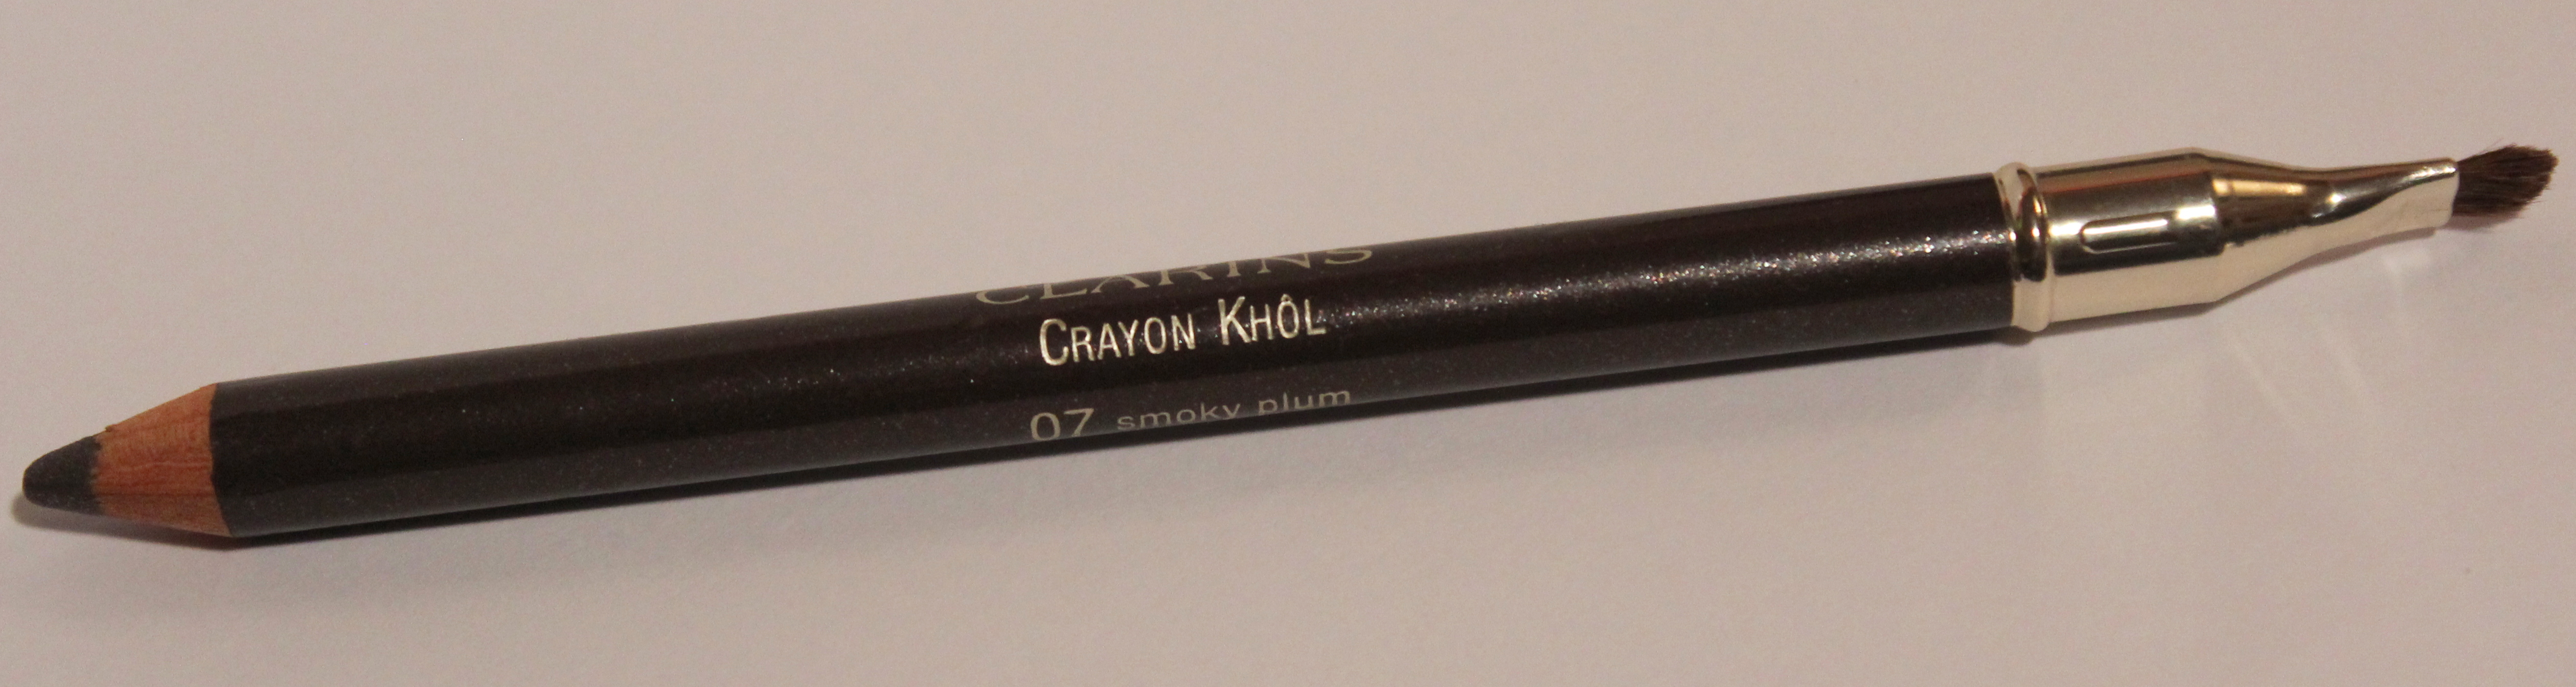 Crayon Khol 07